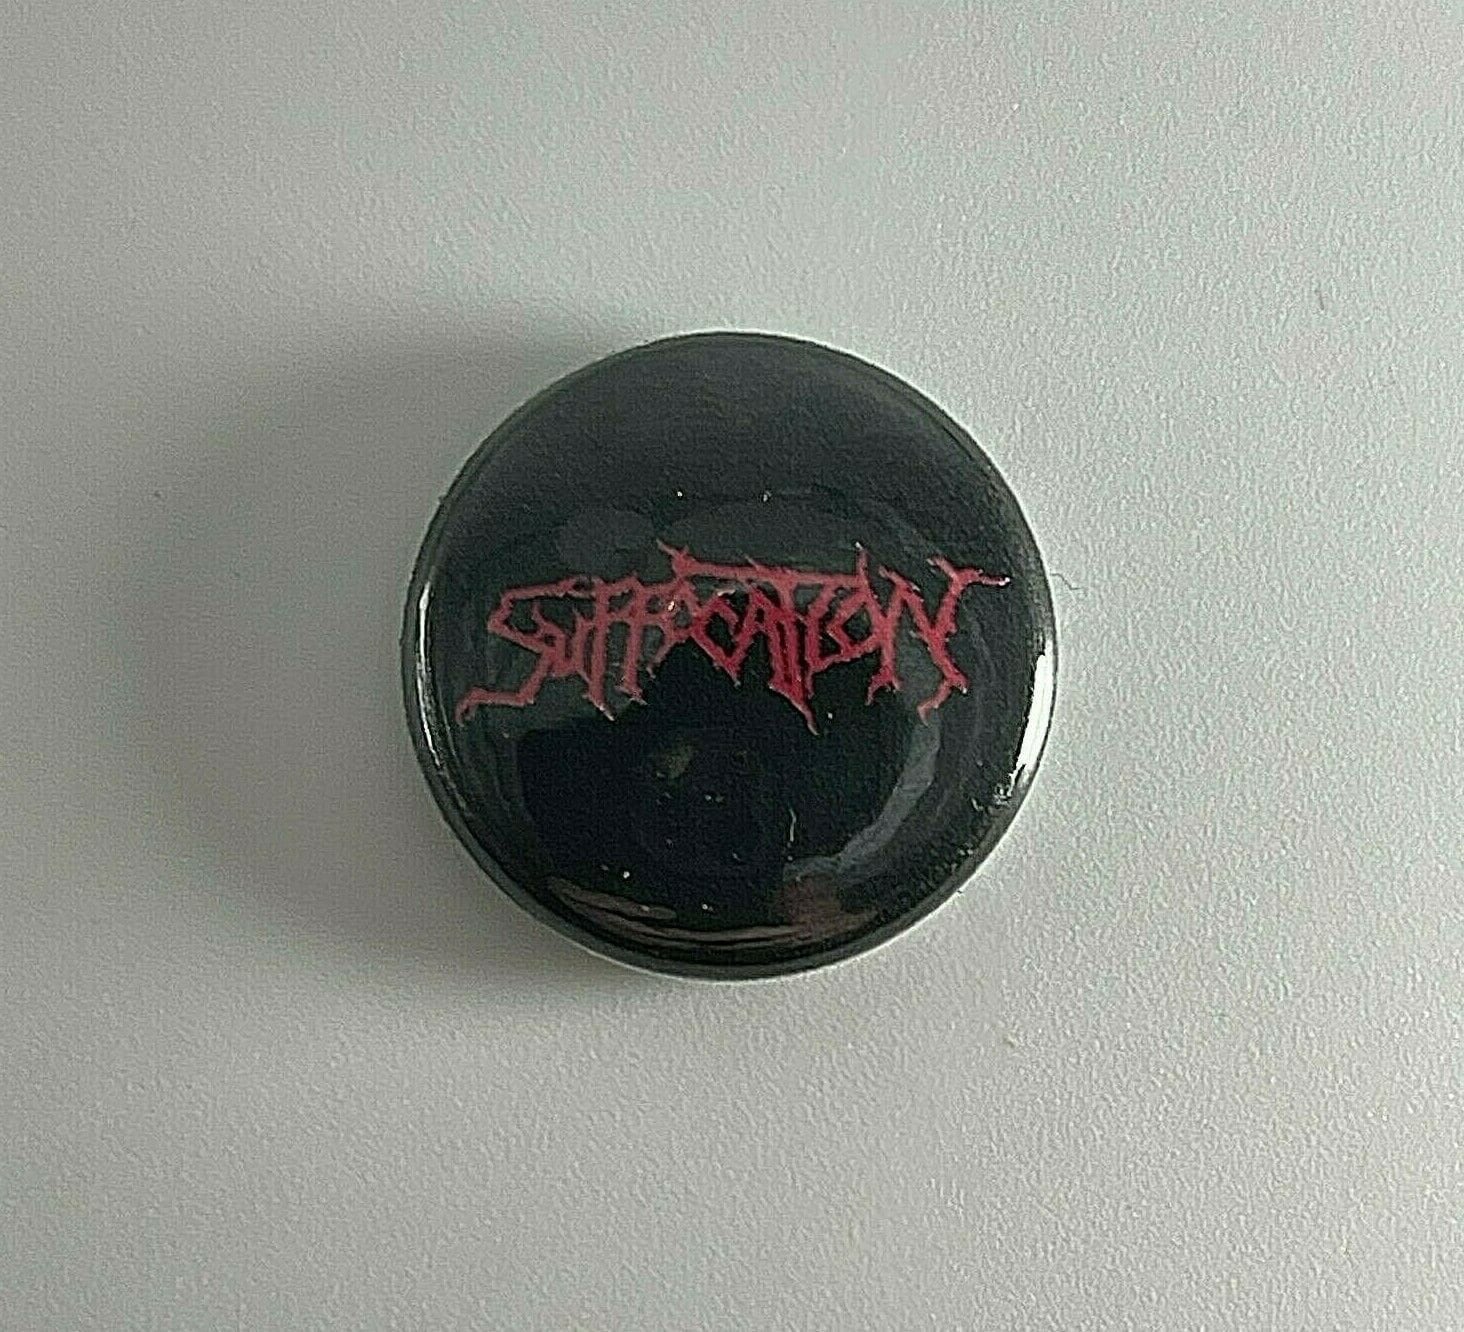 Suffocation Logo 2, 5 cm Button S032B Pin Anstecker von Heavylowmerchandise